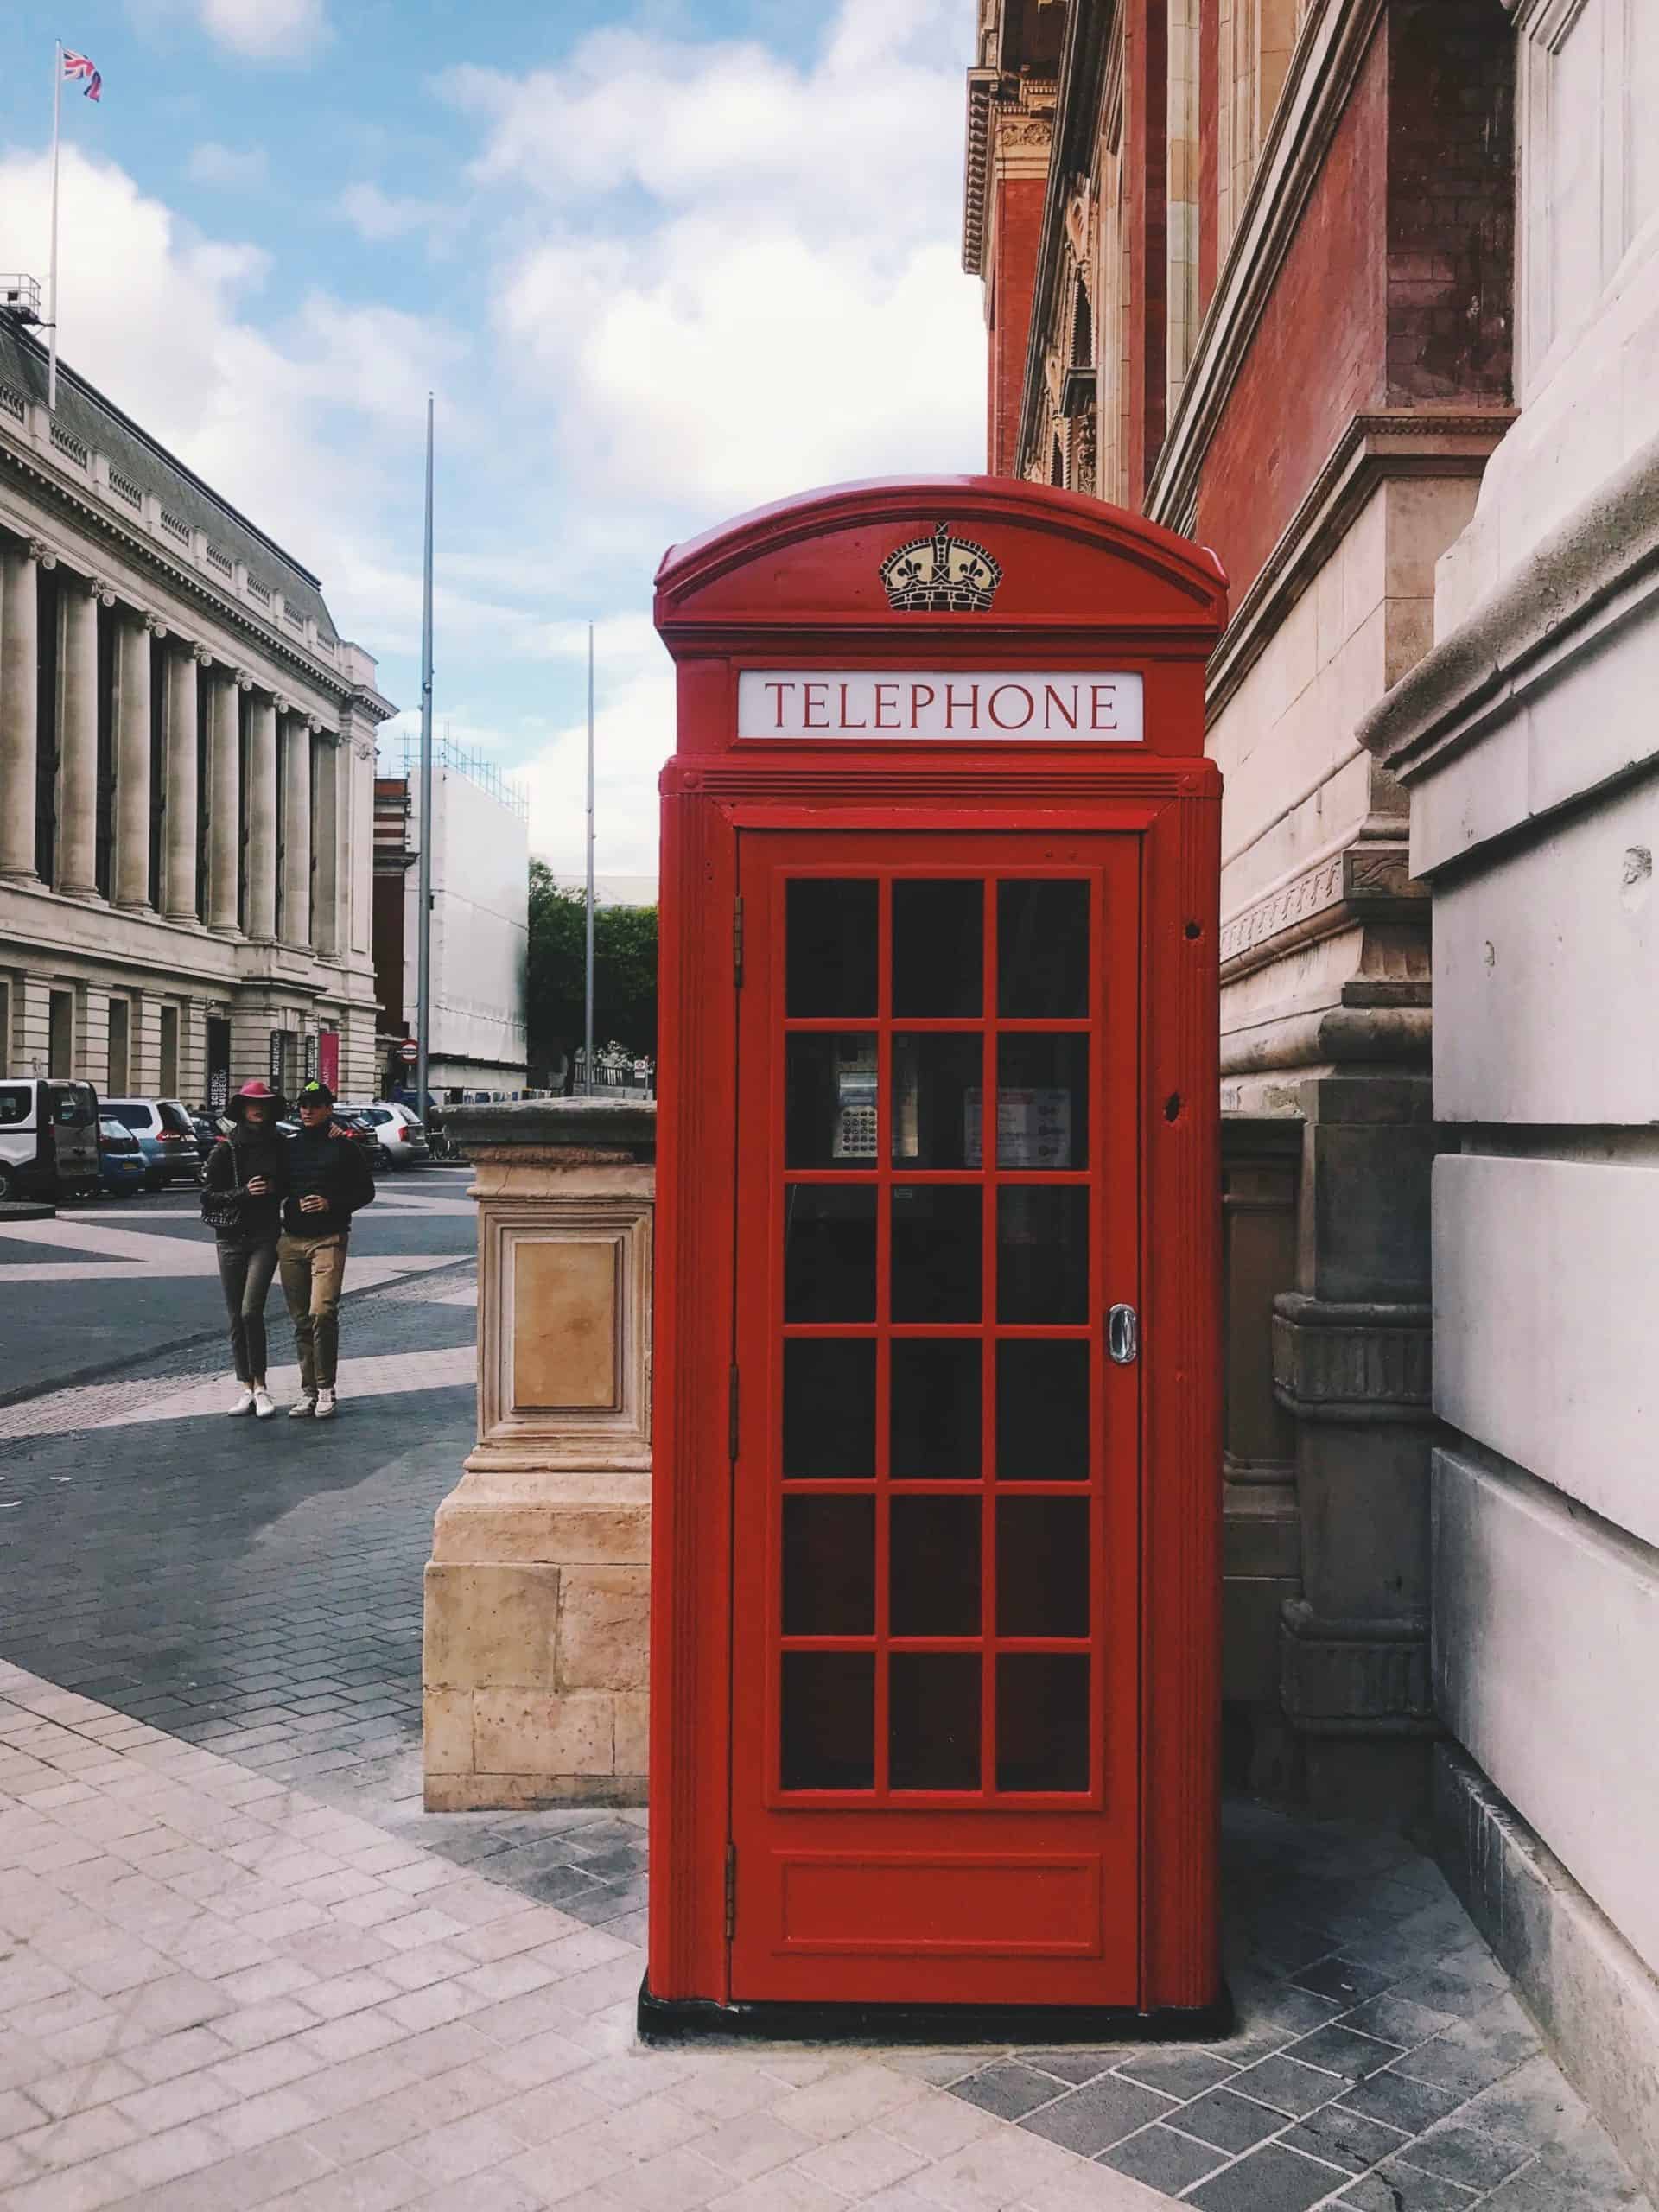 British phonebox